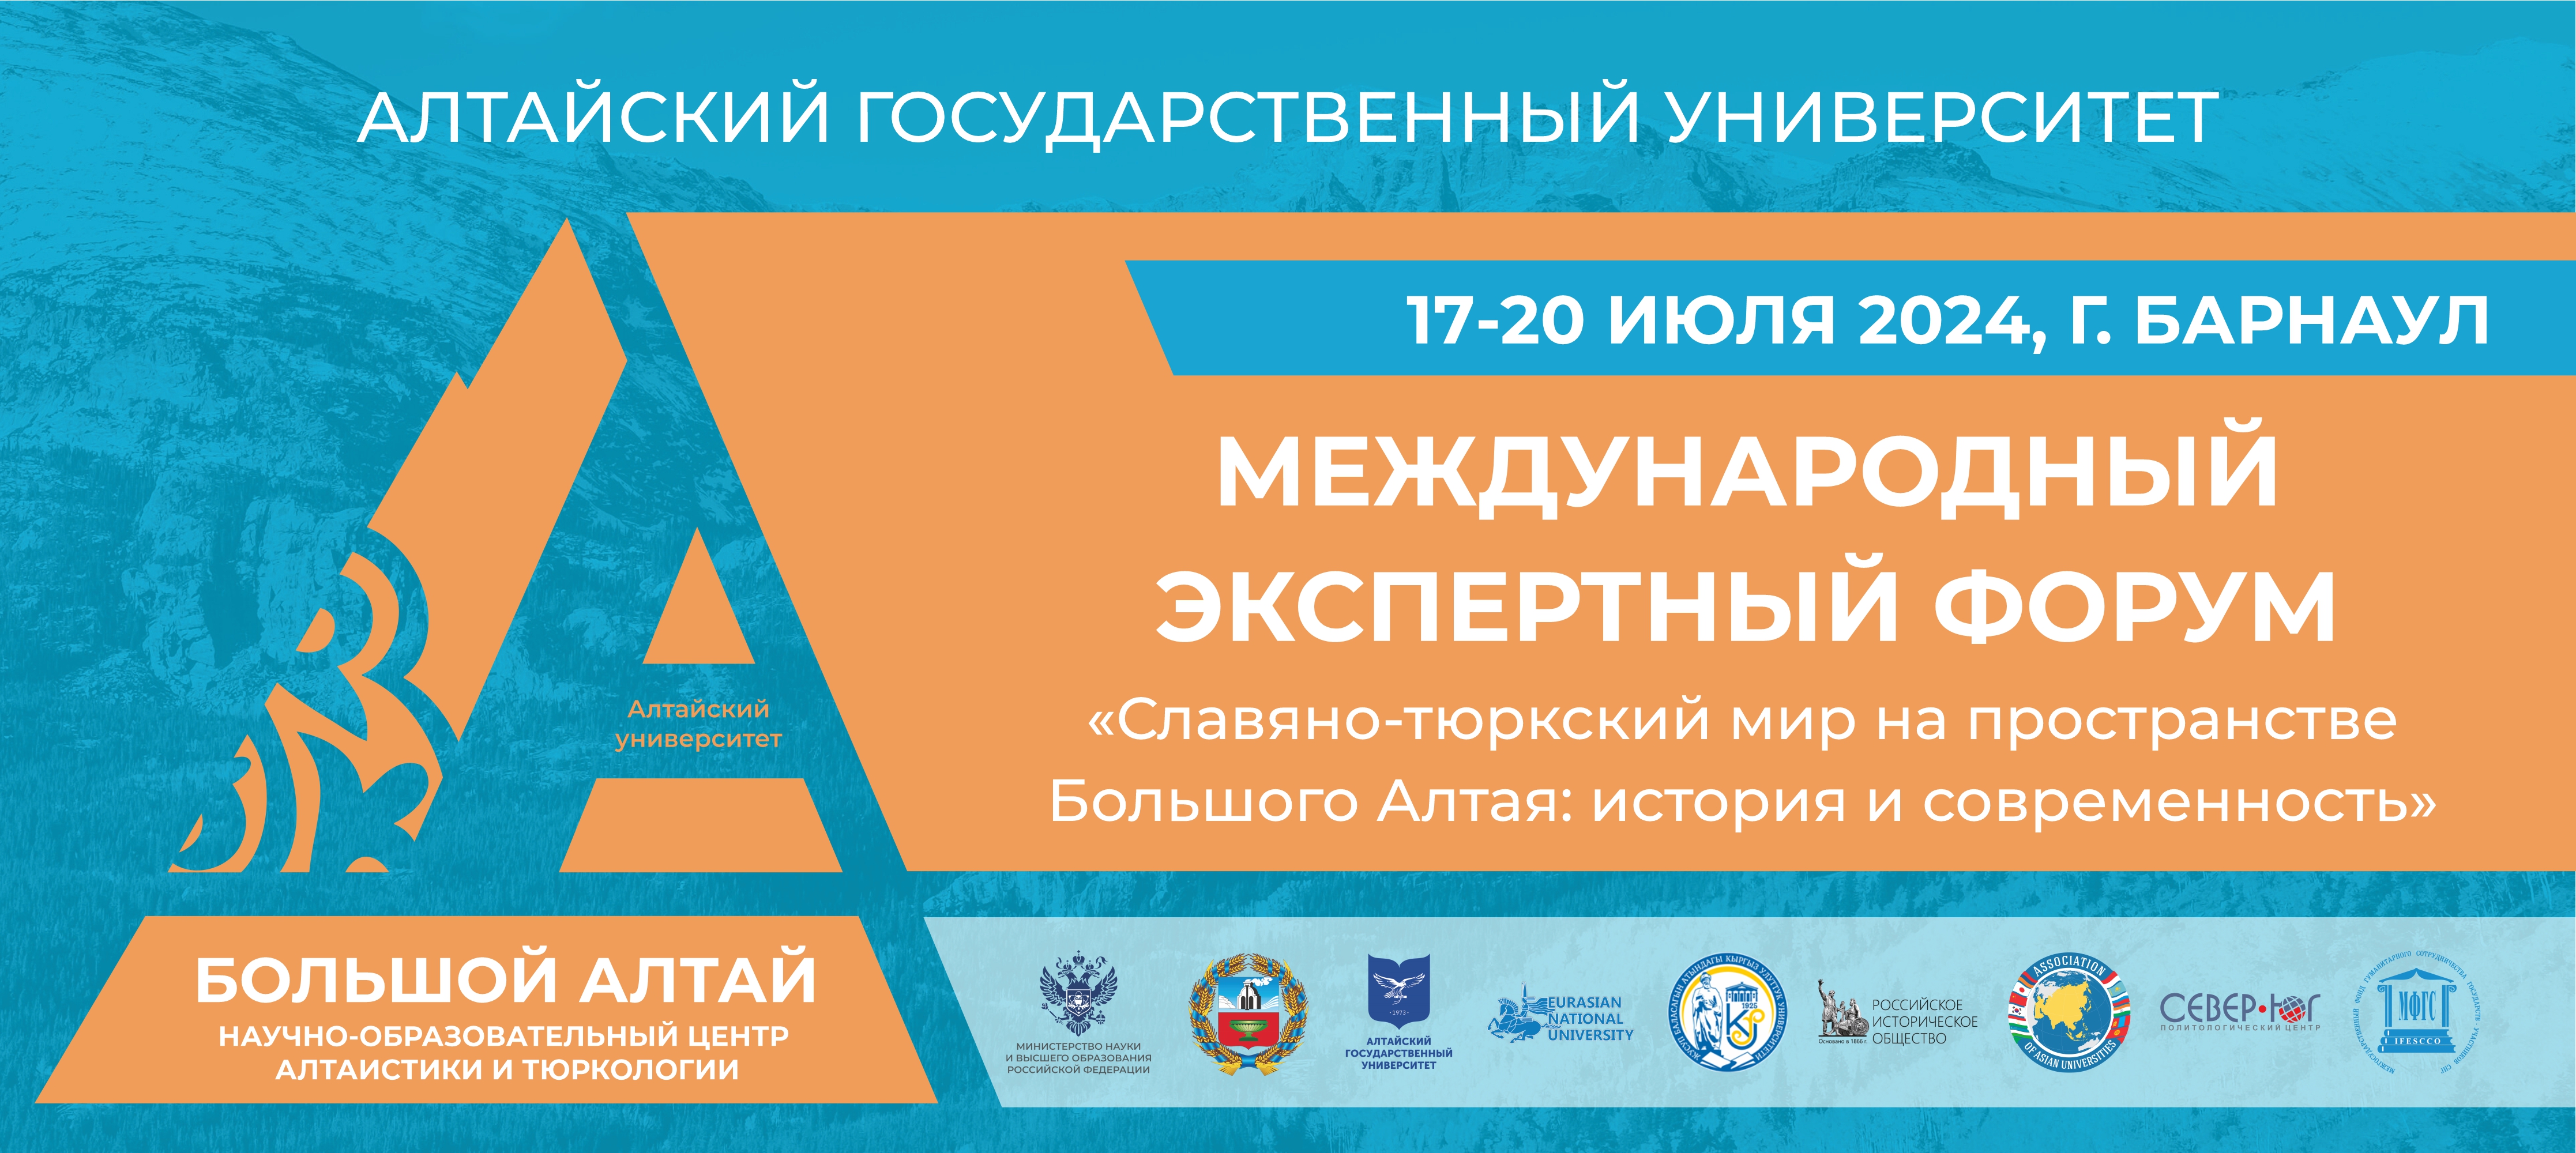 Славяно-тюркский мир на пространстве Большого Алтая: Международный экспертный форум пройдет в АлтГУ